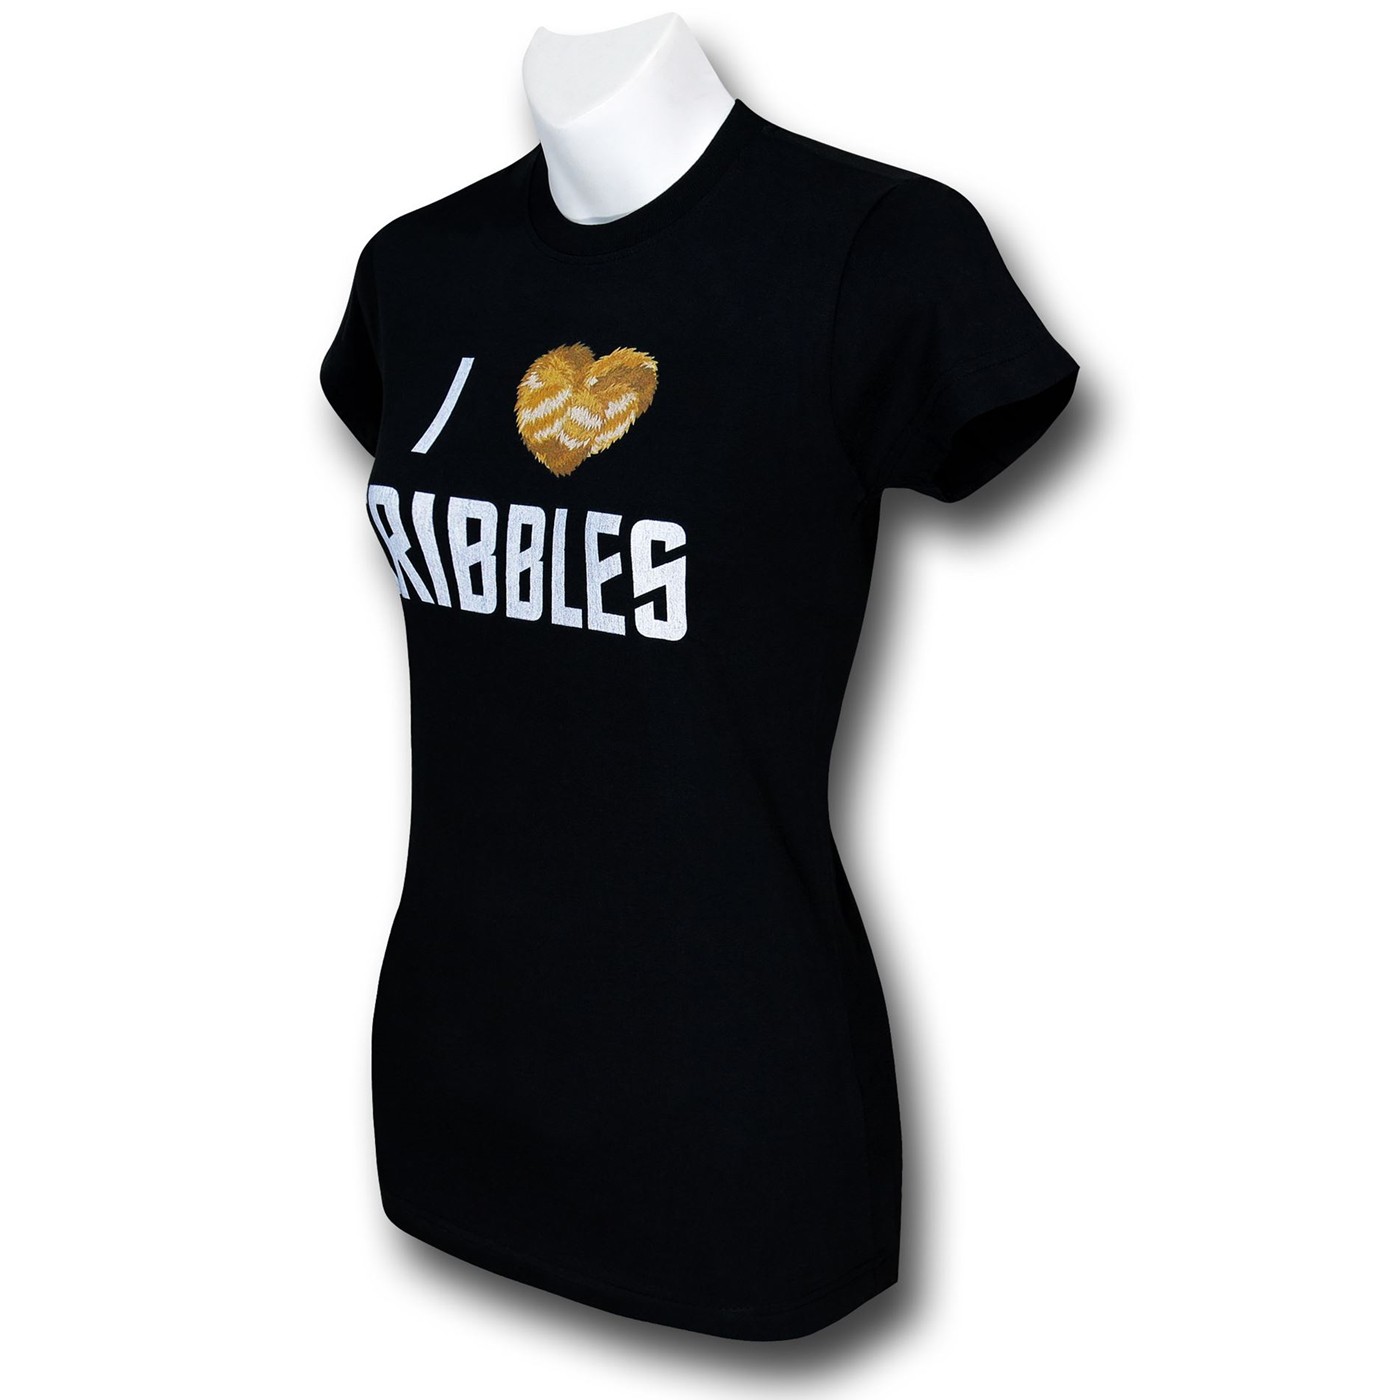 Star Trek Tribble Women's Black T-Shirt